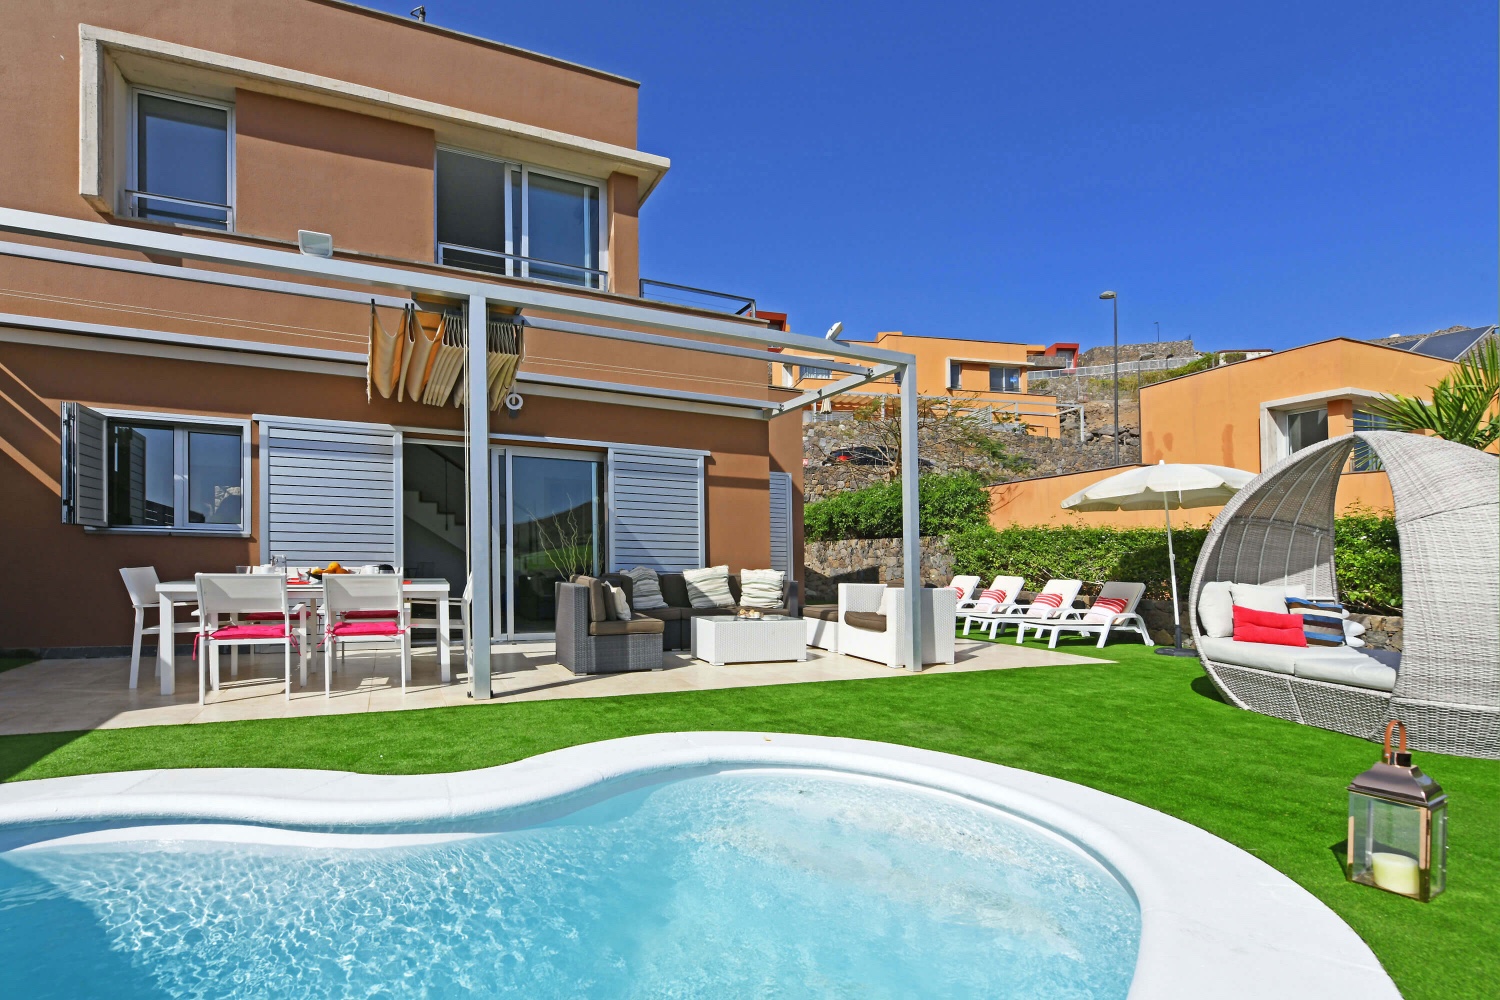 Bella casa con interni luminosi e ampio giardino, piscina privata con riscaldamento solare e splendida vista sul campo da golf